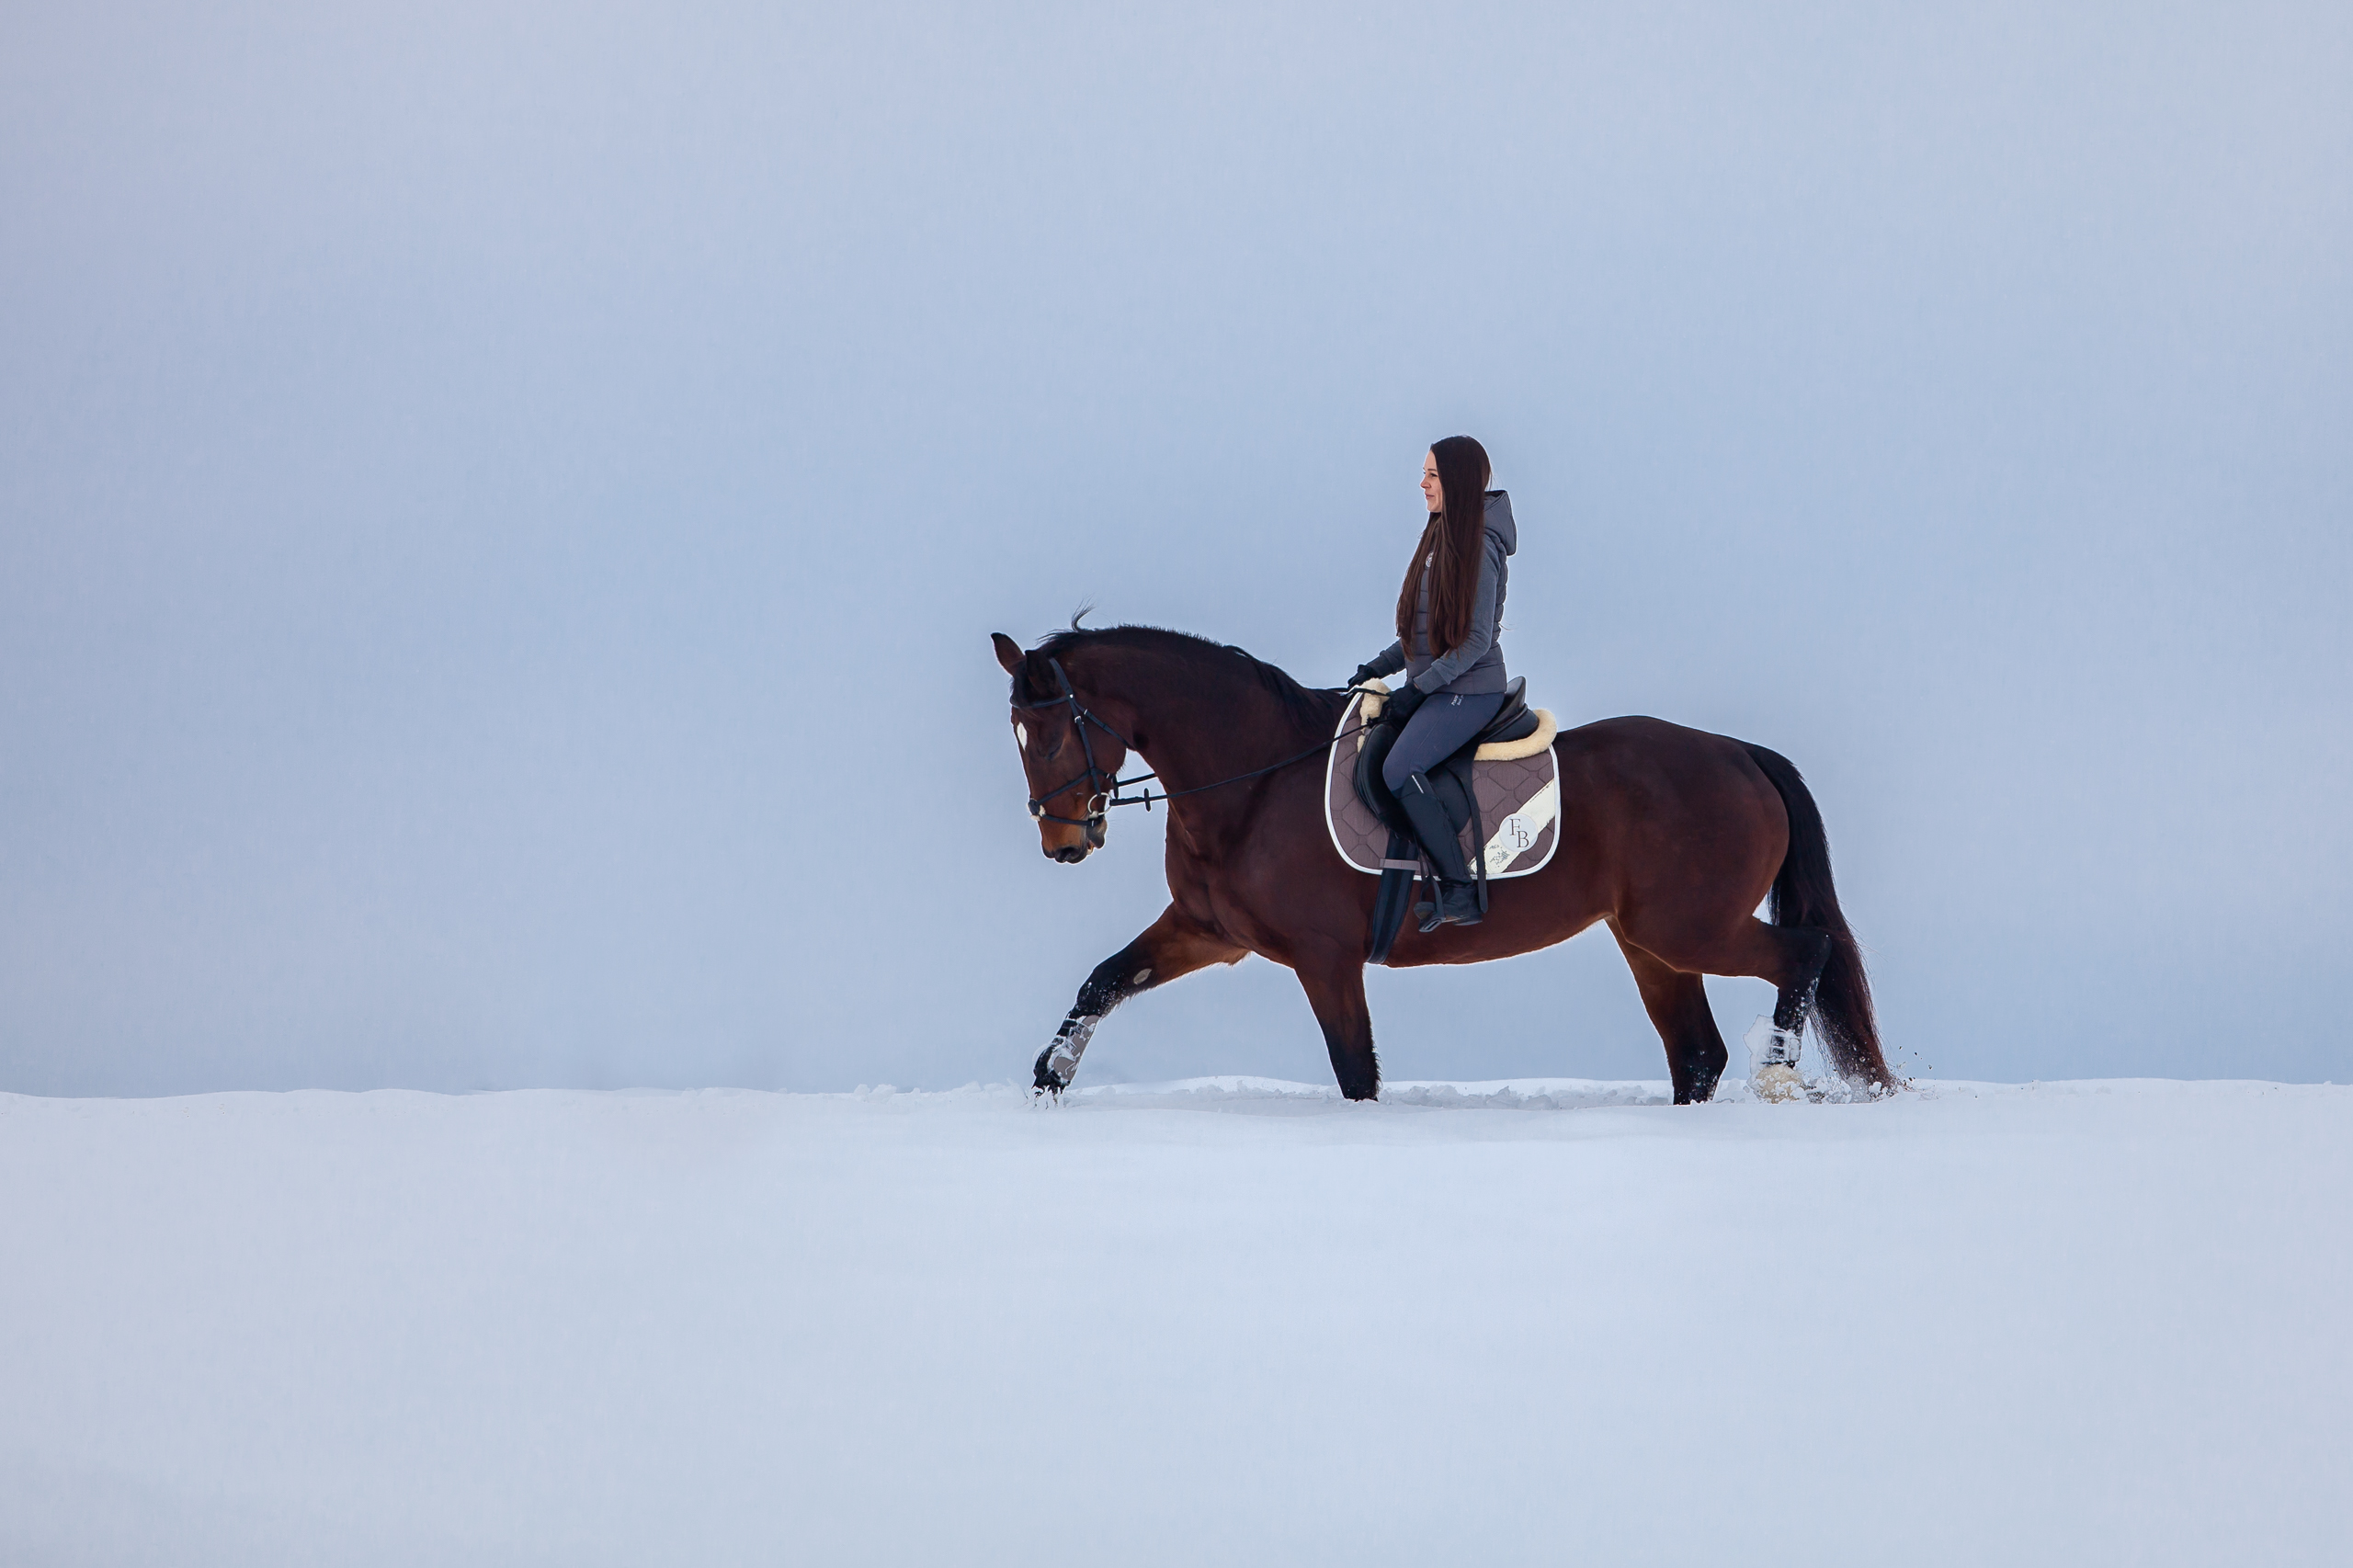 Pferde;Portfolio;Schnee;Tierfotografie;lumo obscura;outdoor